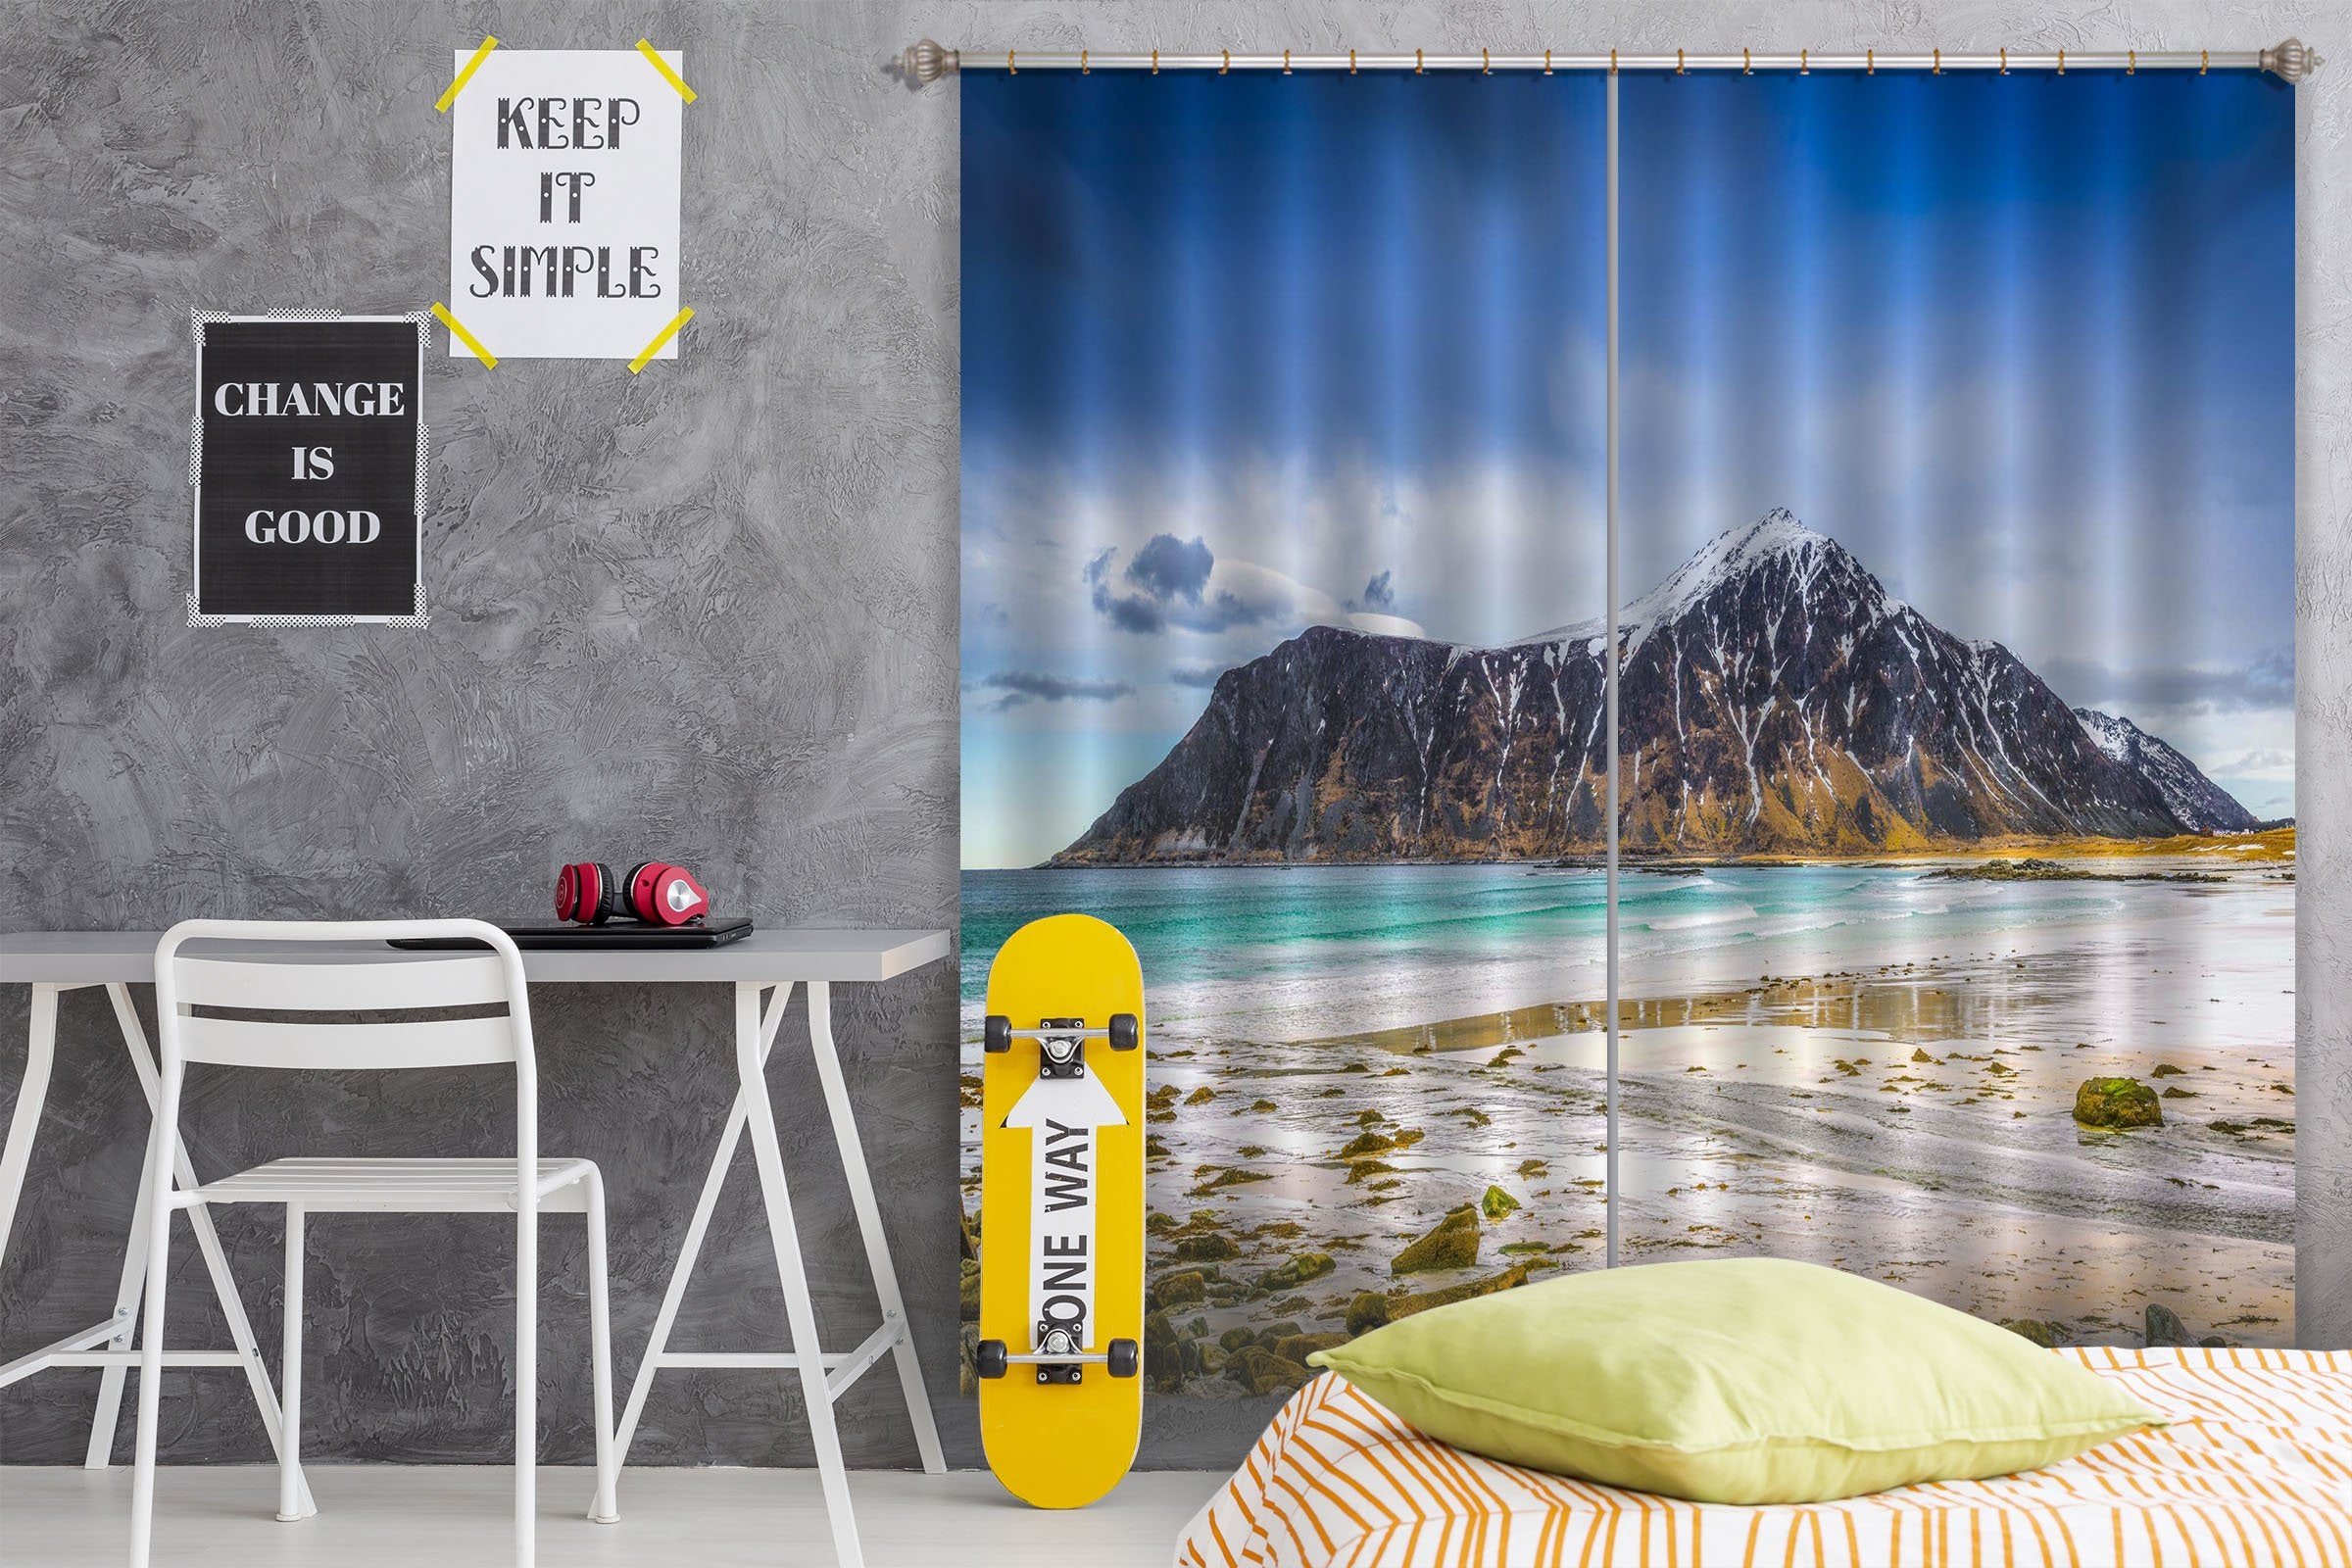 3D Beach Island 145 Marco Carmassi Curtain Curtains Drapes Wallpaper AJ Wallpaper 